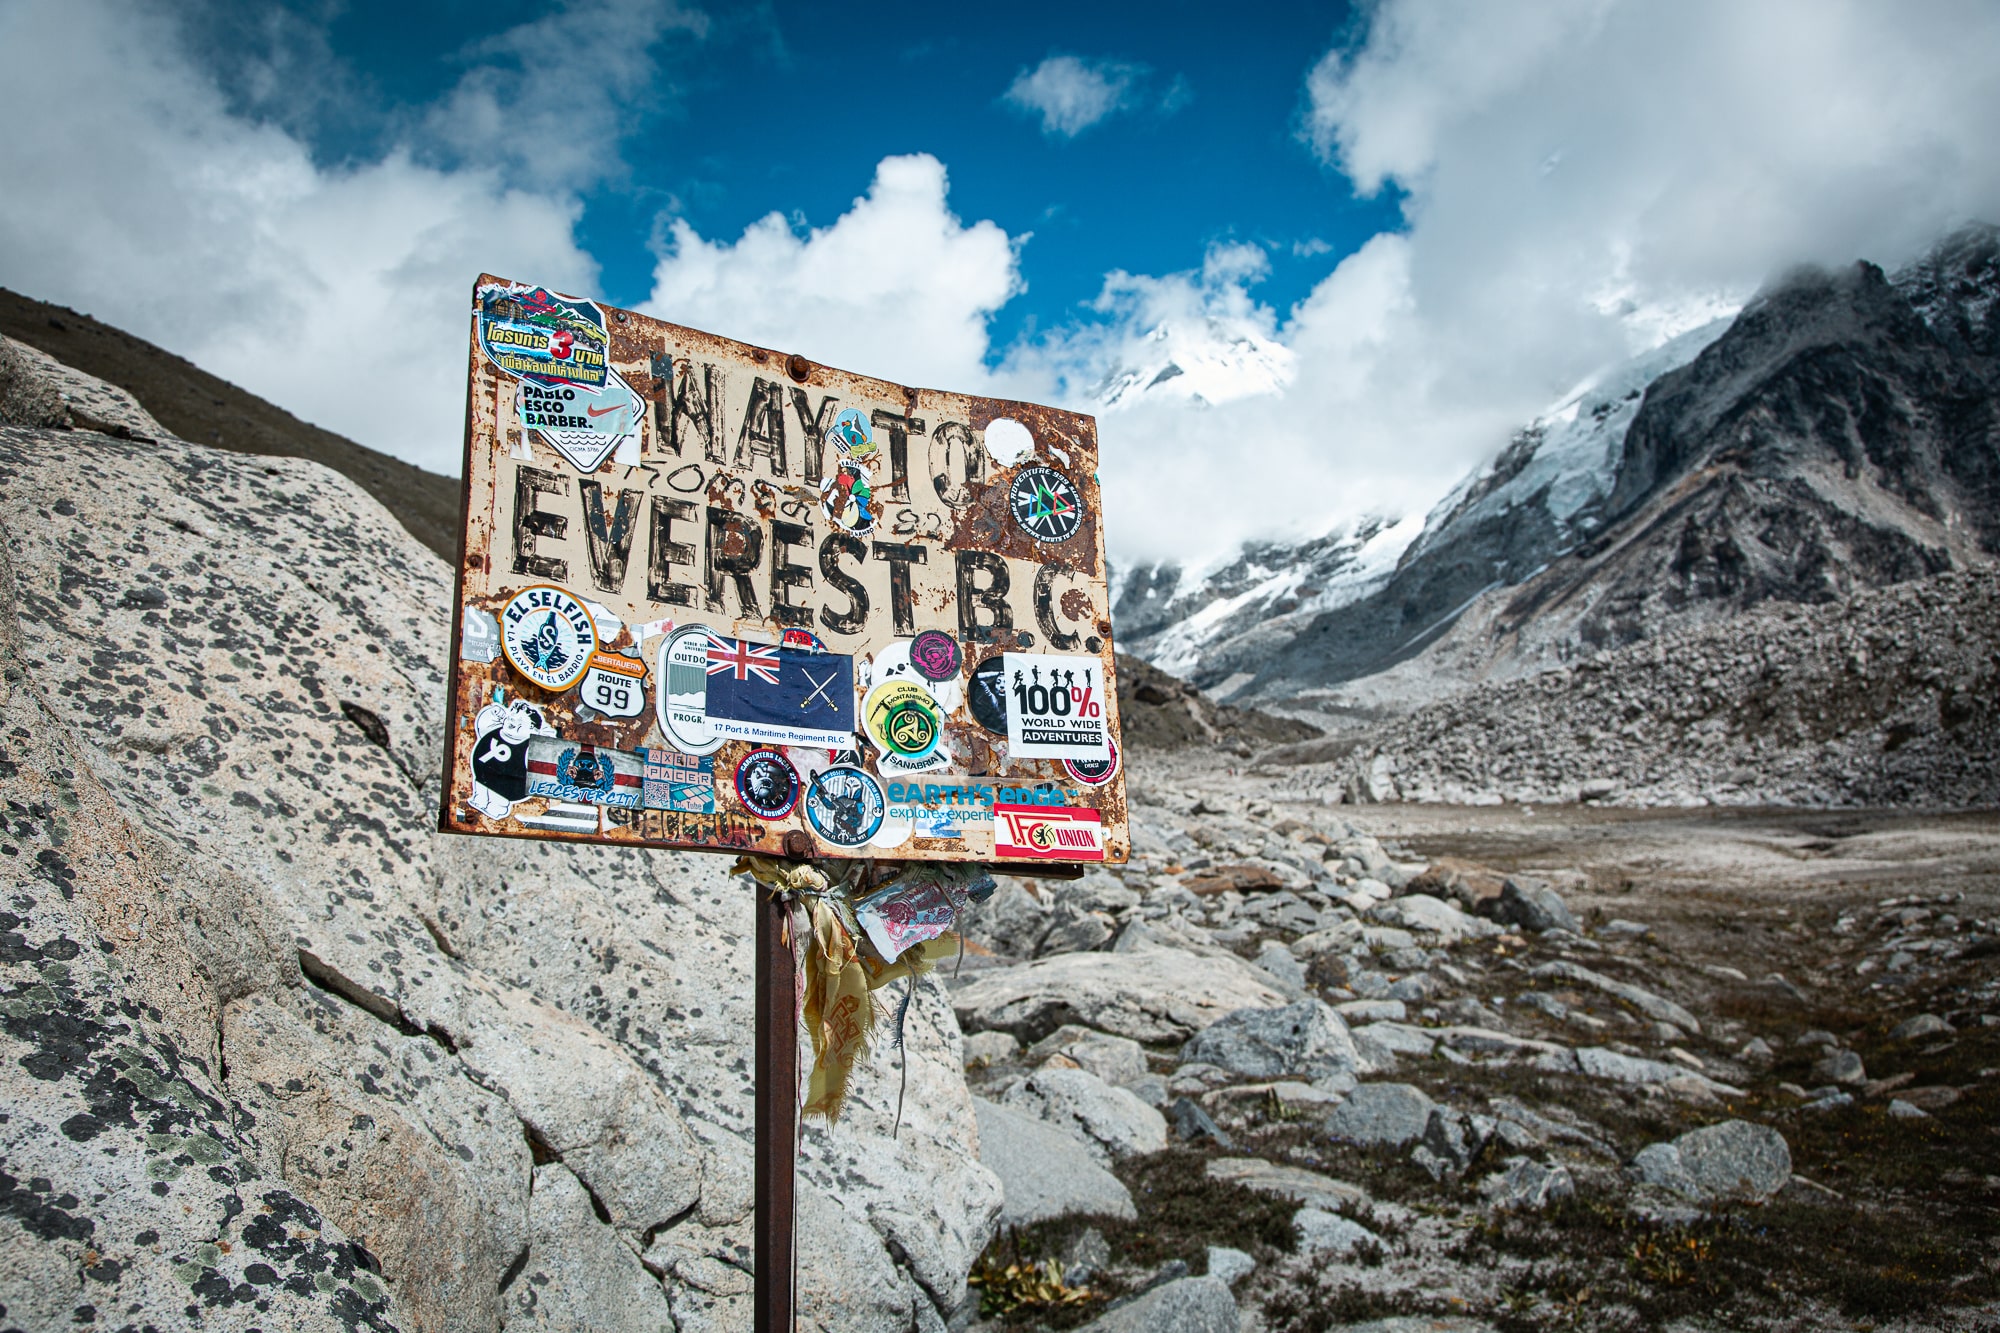 Everest trekking tips